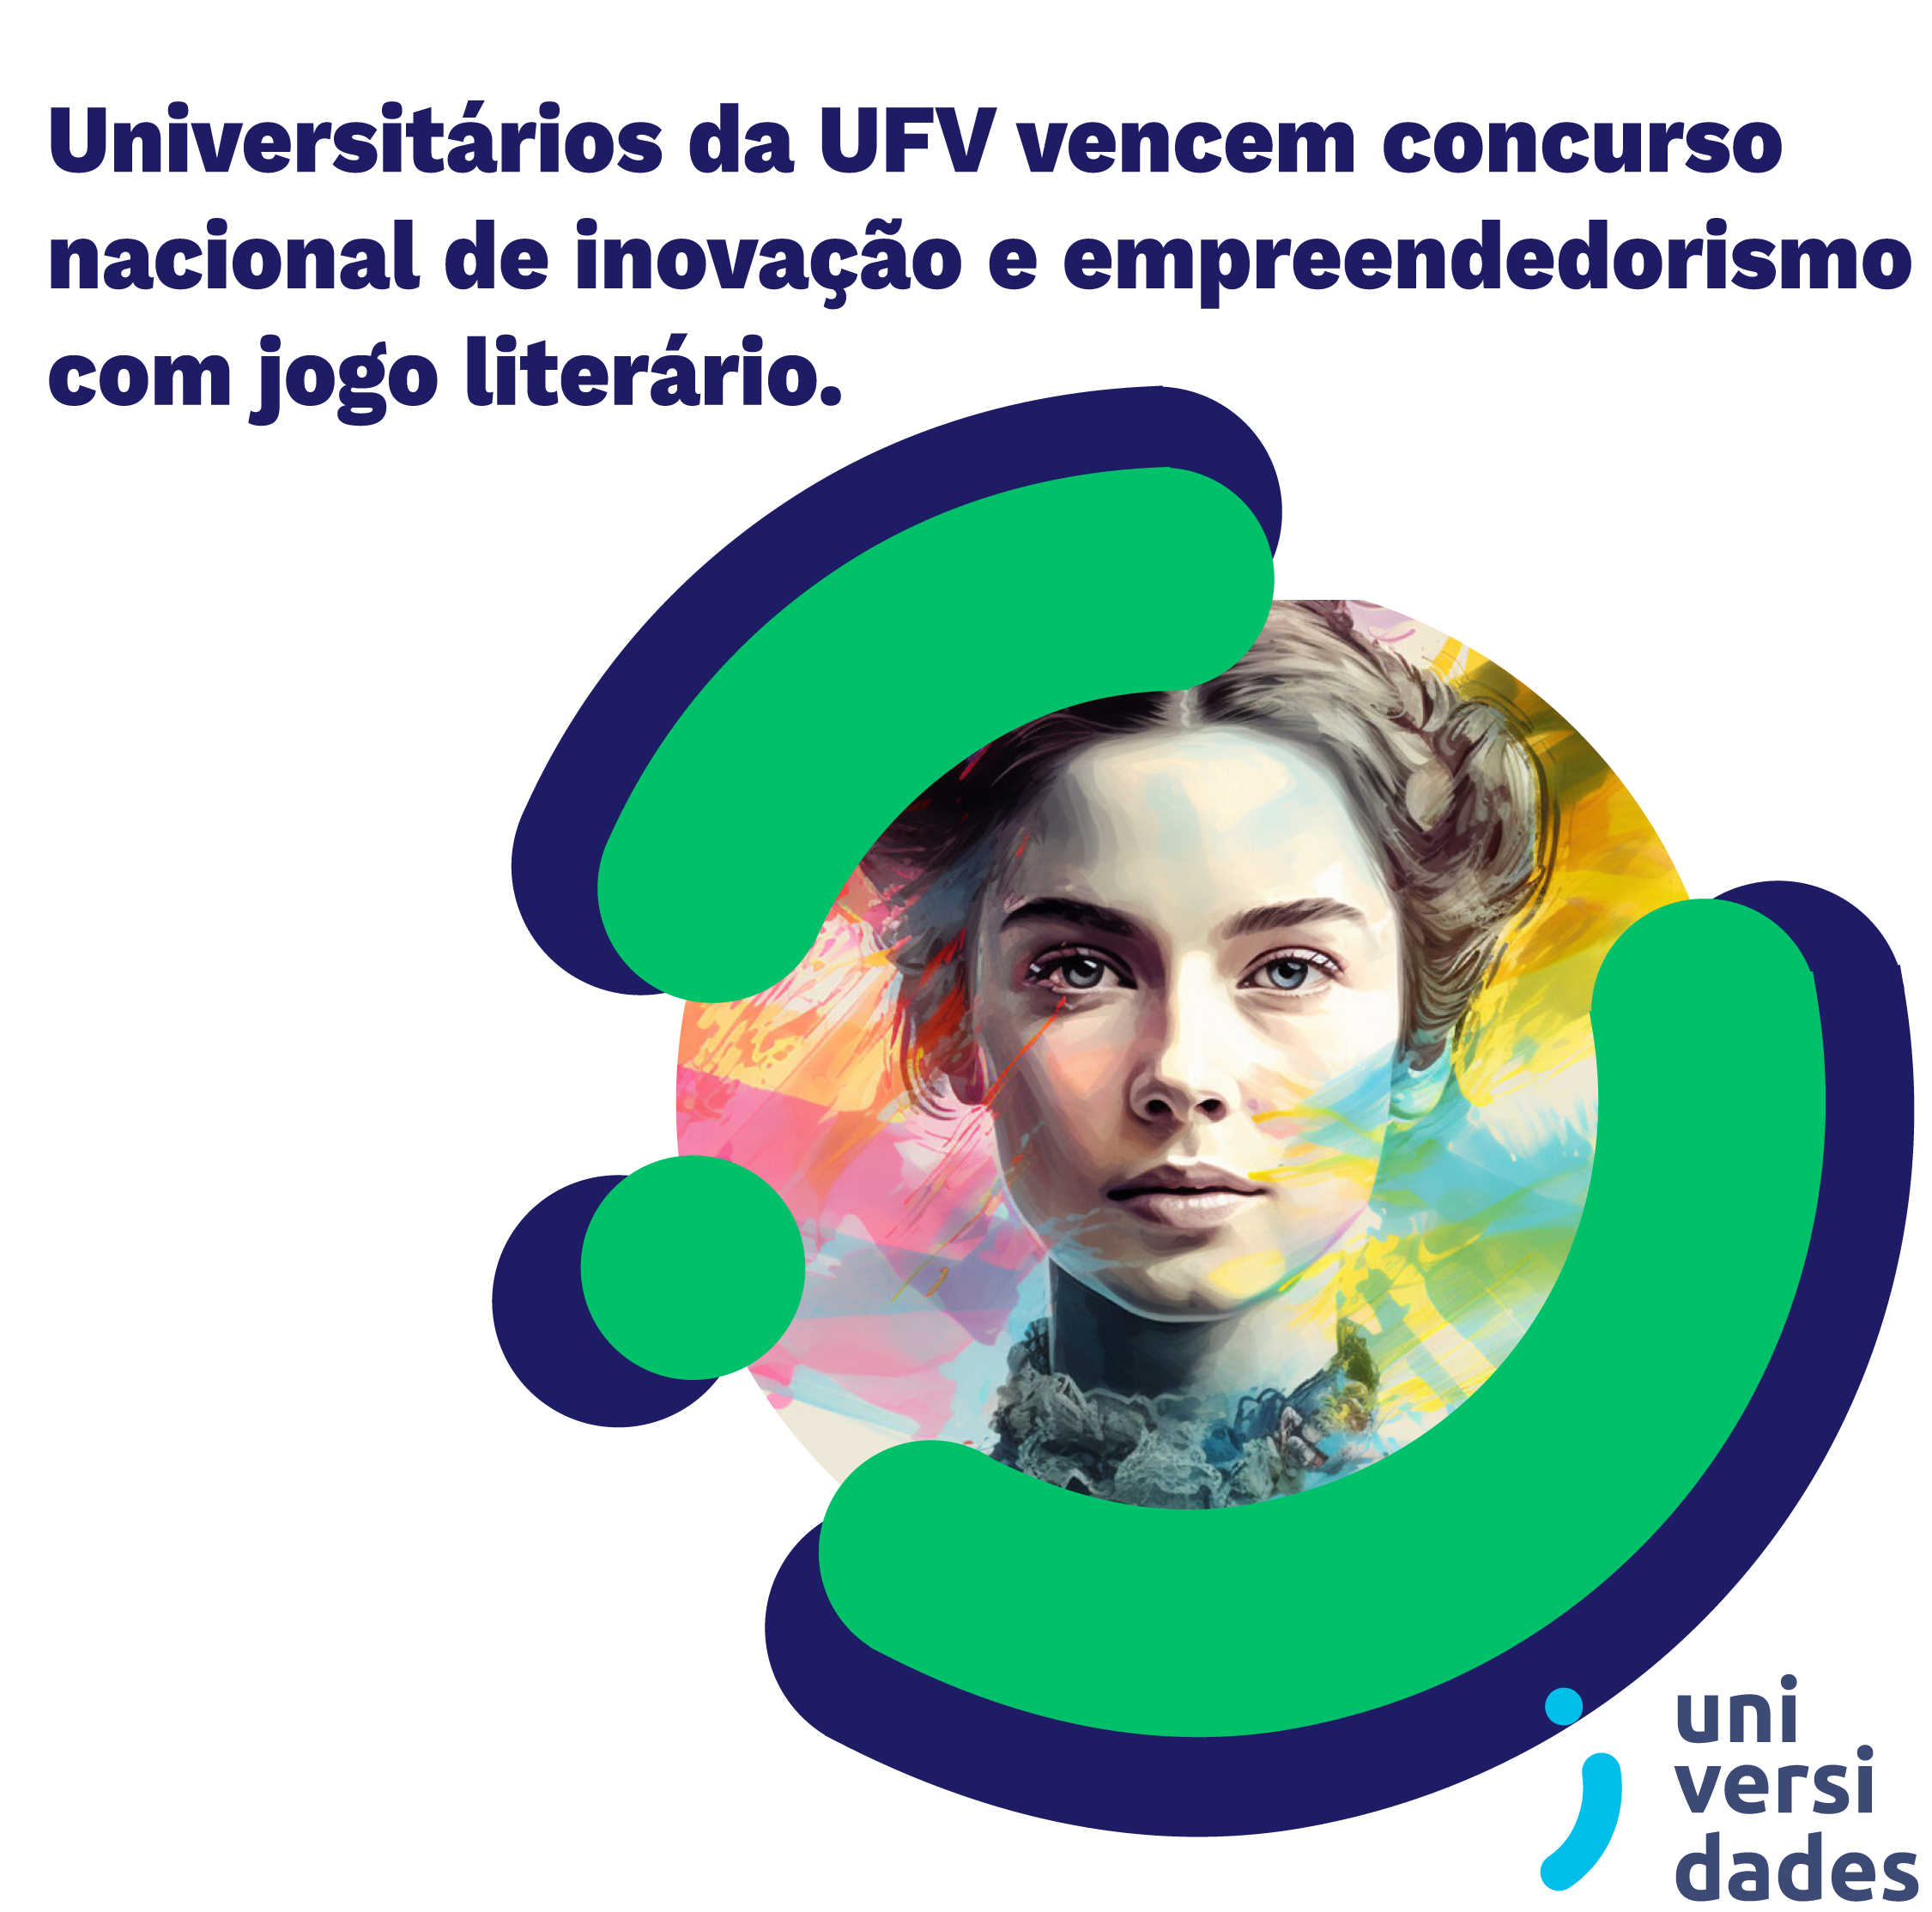 Universitários da UFV vencem concurso nacional de inovação e empreendedorismo com jogo literário